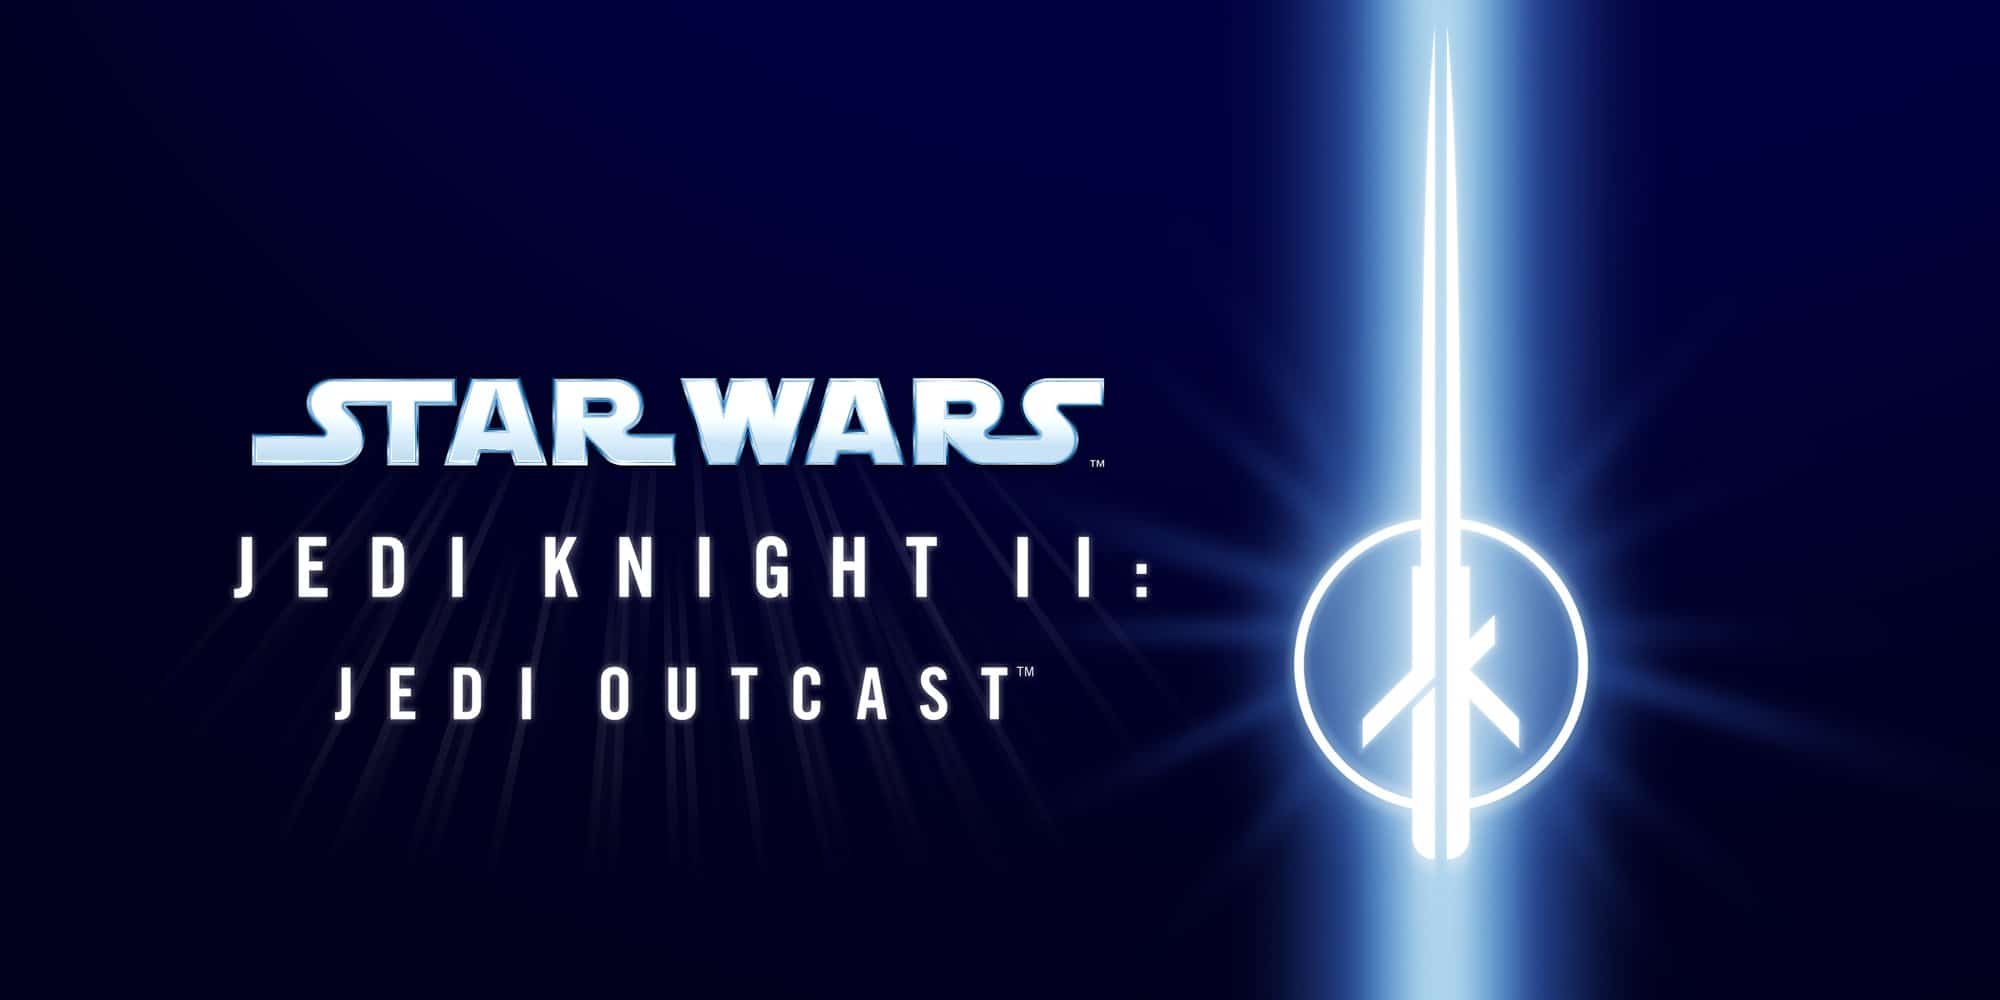 Star Wars: Jedi Knight II: Jedi Outcast recibe una actualización que permite invertir el eje Y